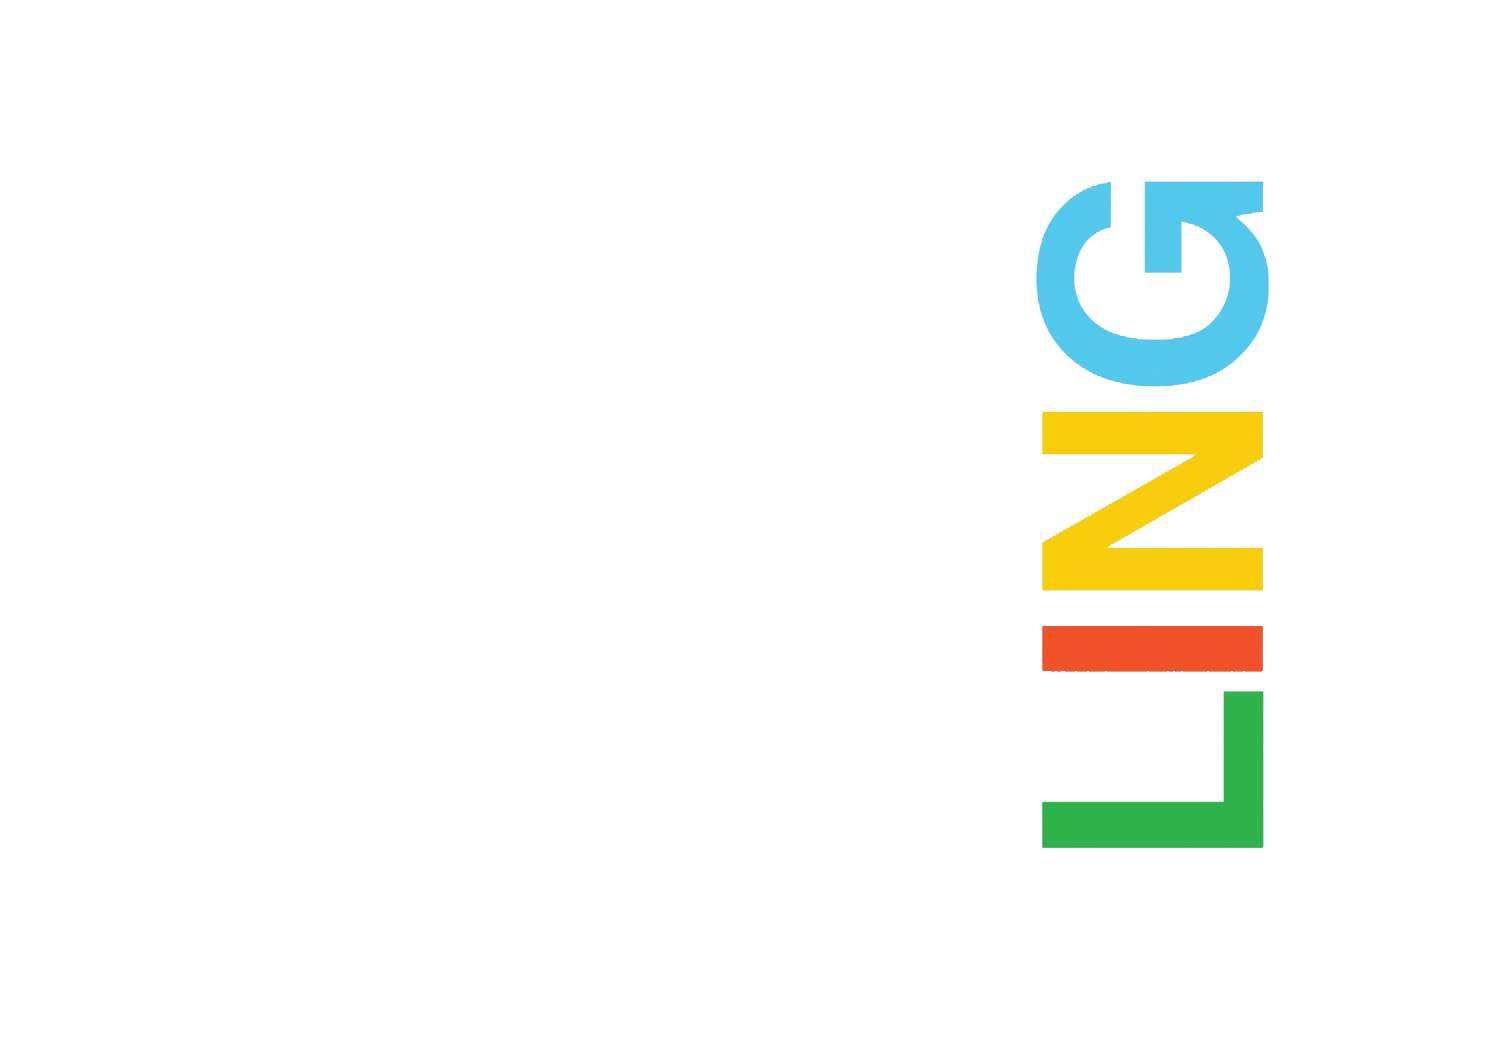 Ashley Elizabeth Ling